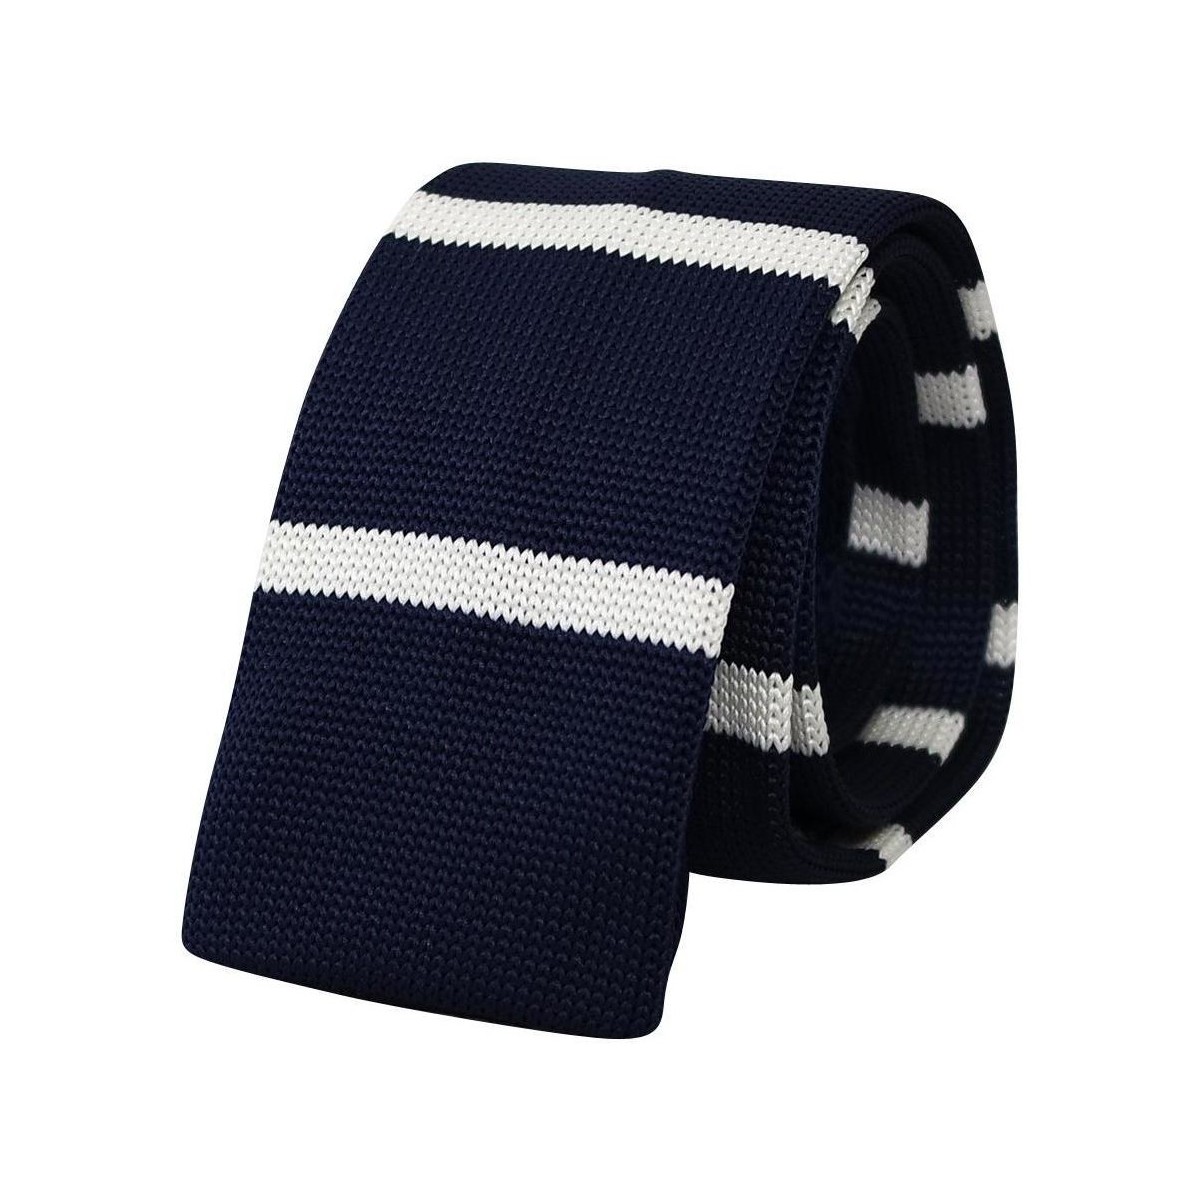 Vêtements Homme Cravates et accessoires Chapeau-Tendance Cravate tricot fantaisie Bleu